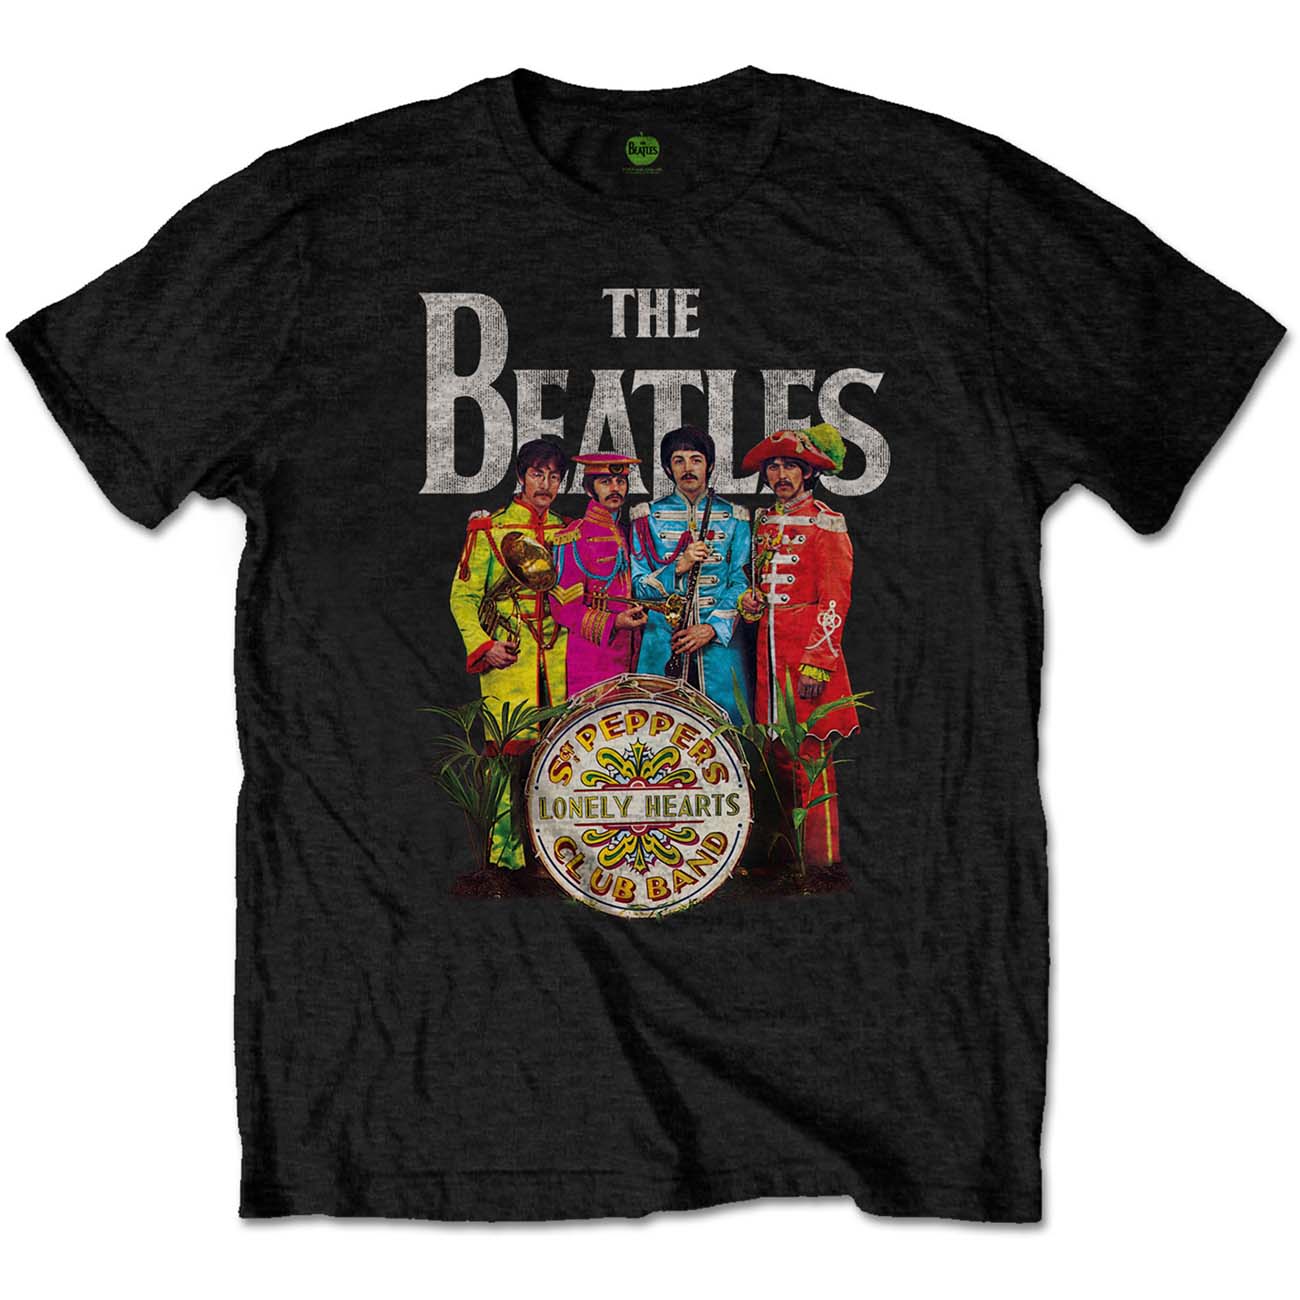 The Beatles Official T-Shirt Sgt Pepper